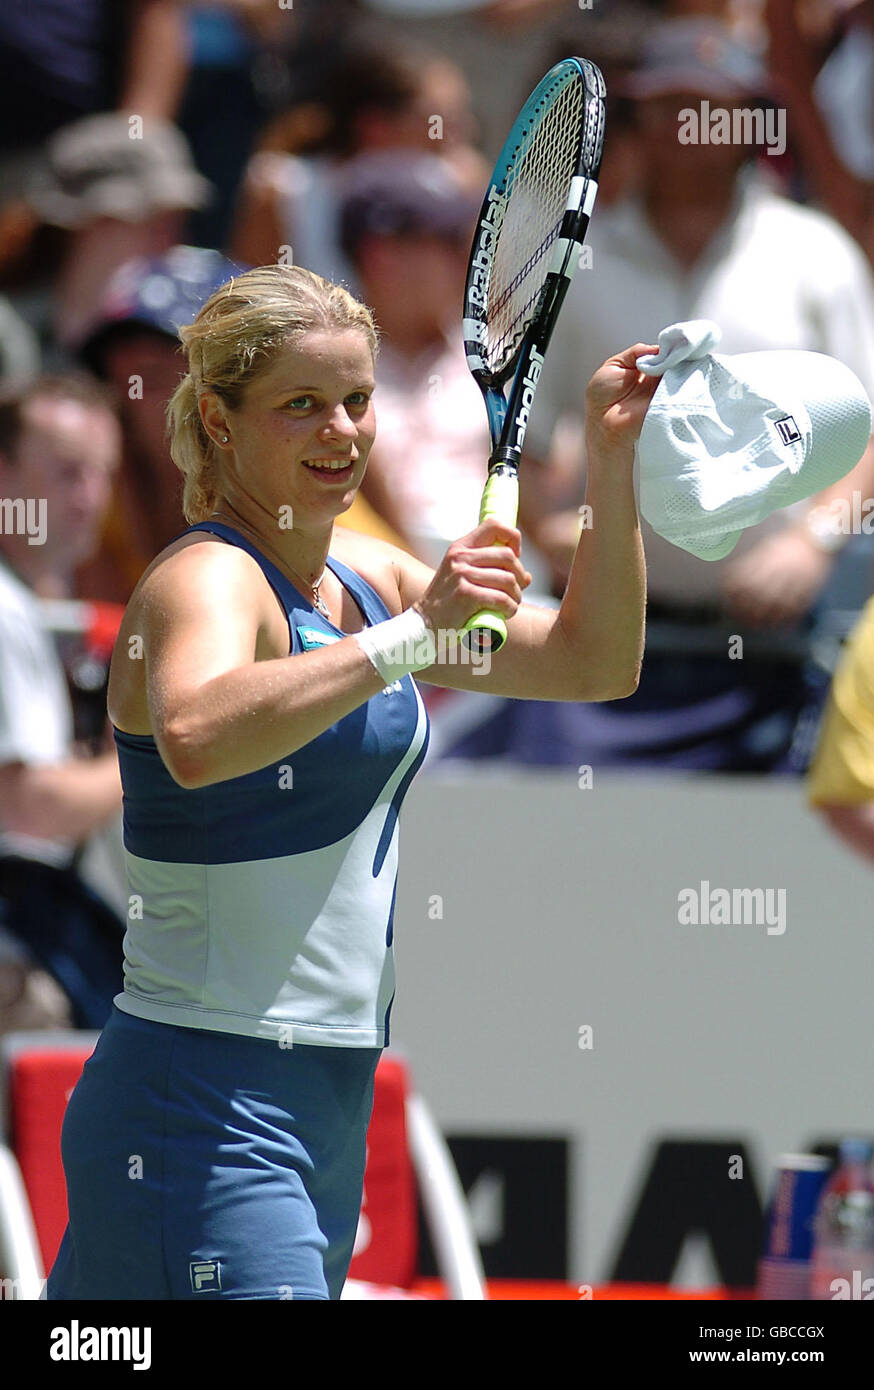 Tennis - Australiano aperto 2004 - quarto turno. Kim Clijsters celebra la sua vittoria su Silvia farina Elia Foto Stock